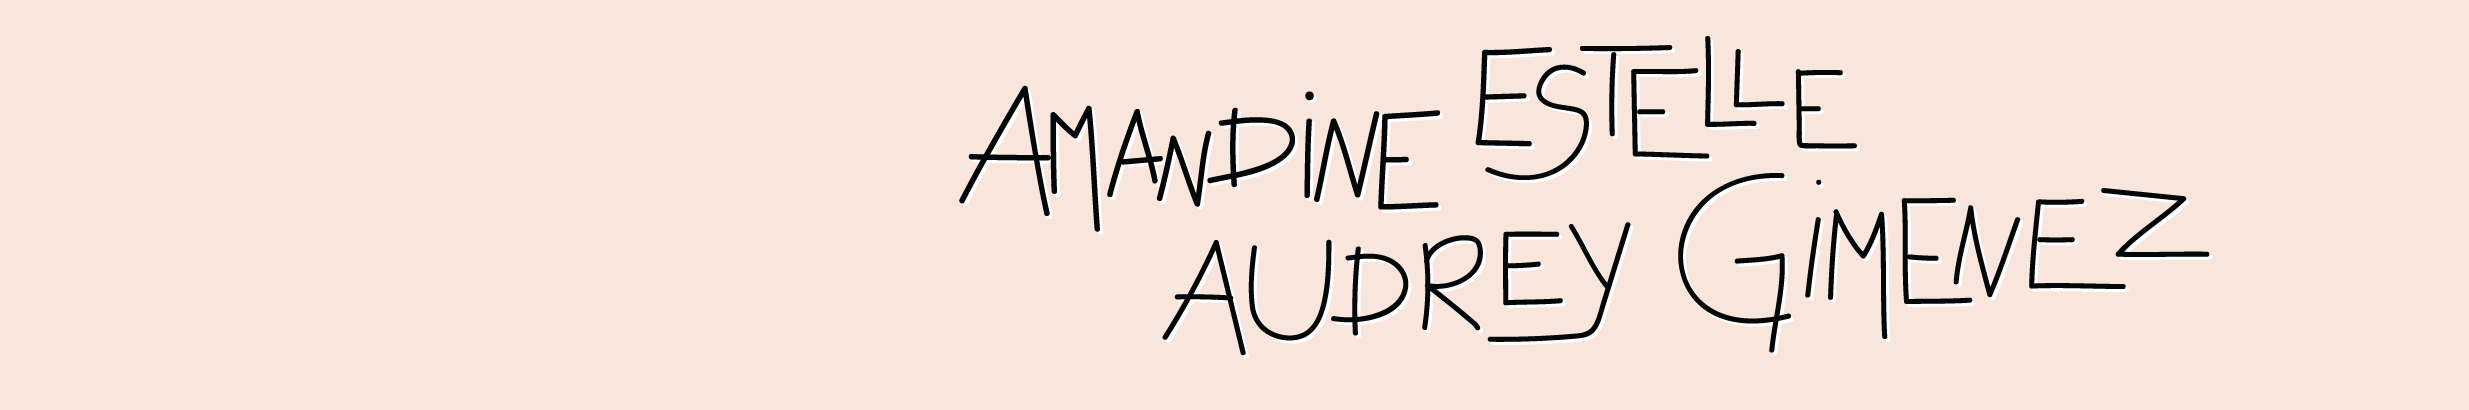 Баннер профиля Amandine, Estelle, Audrey